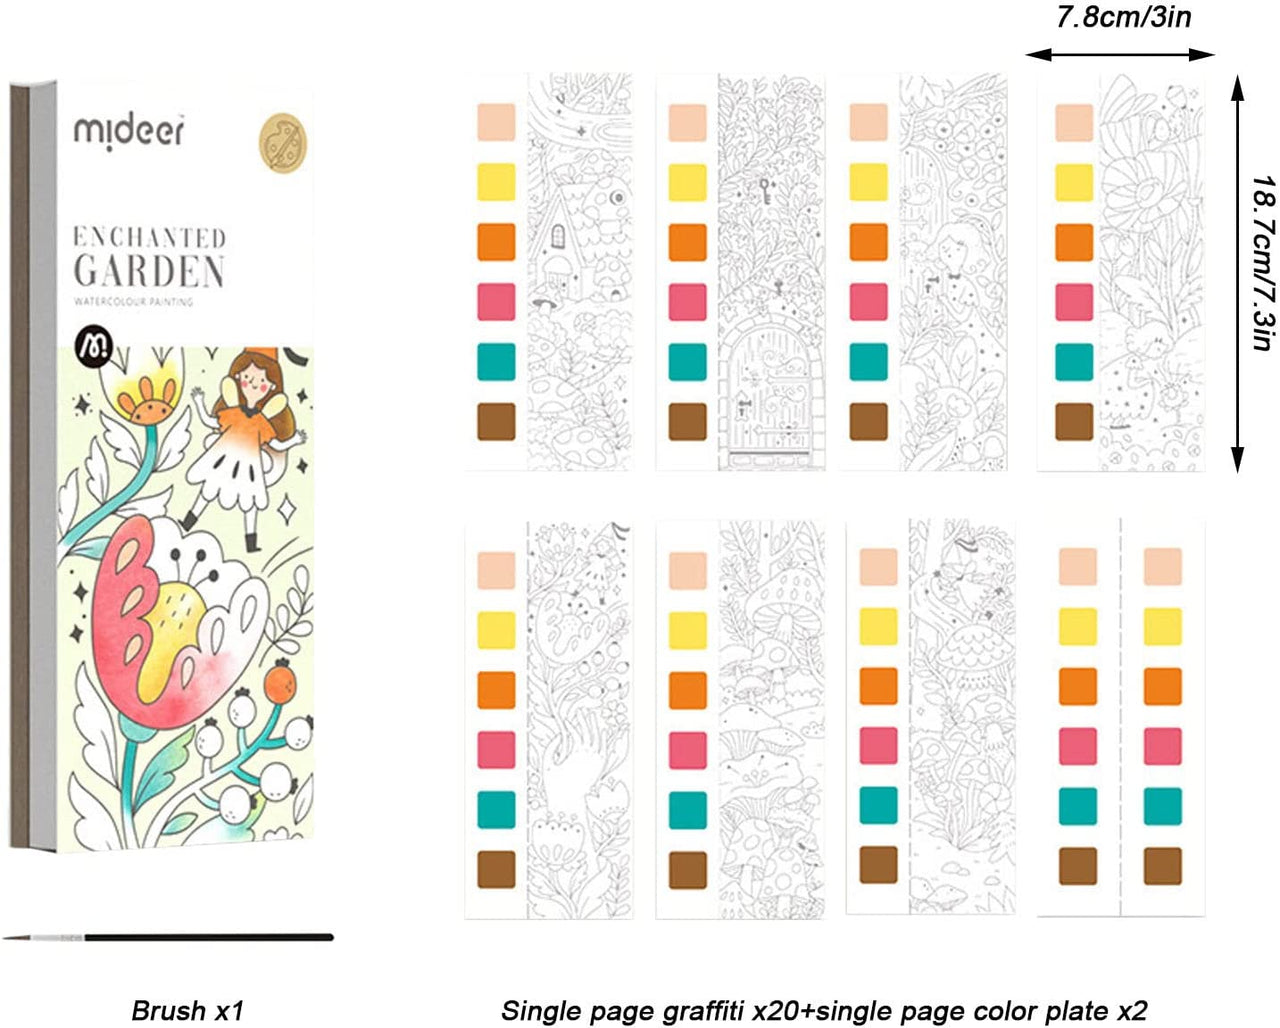 Paint Book™ - Kreativ med vandfarver - Malebog med 6 farver